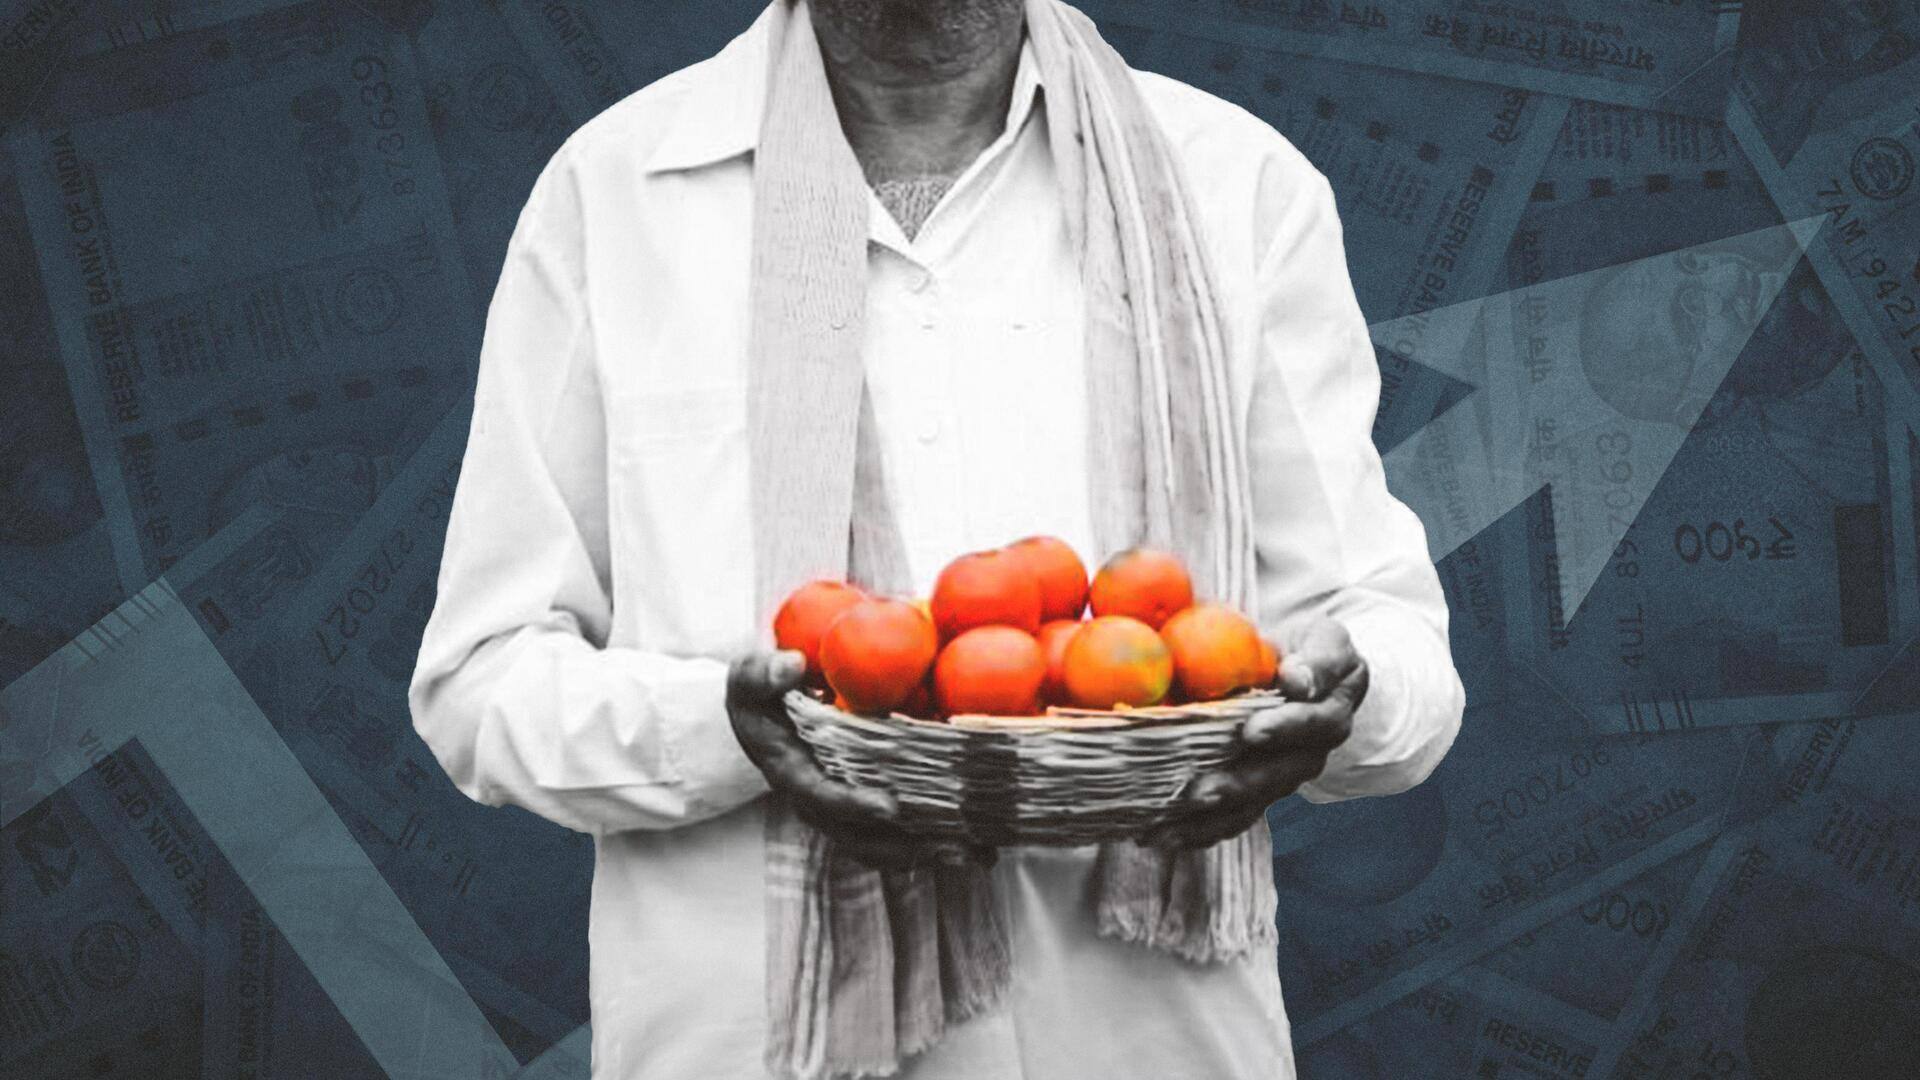 पुणे: टमाटर ने बदली किसान की किस्मत, एक महीने में बन गया करोड़पति